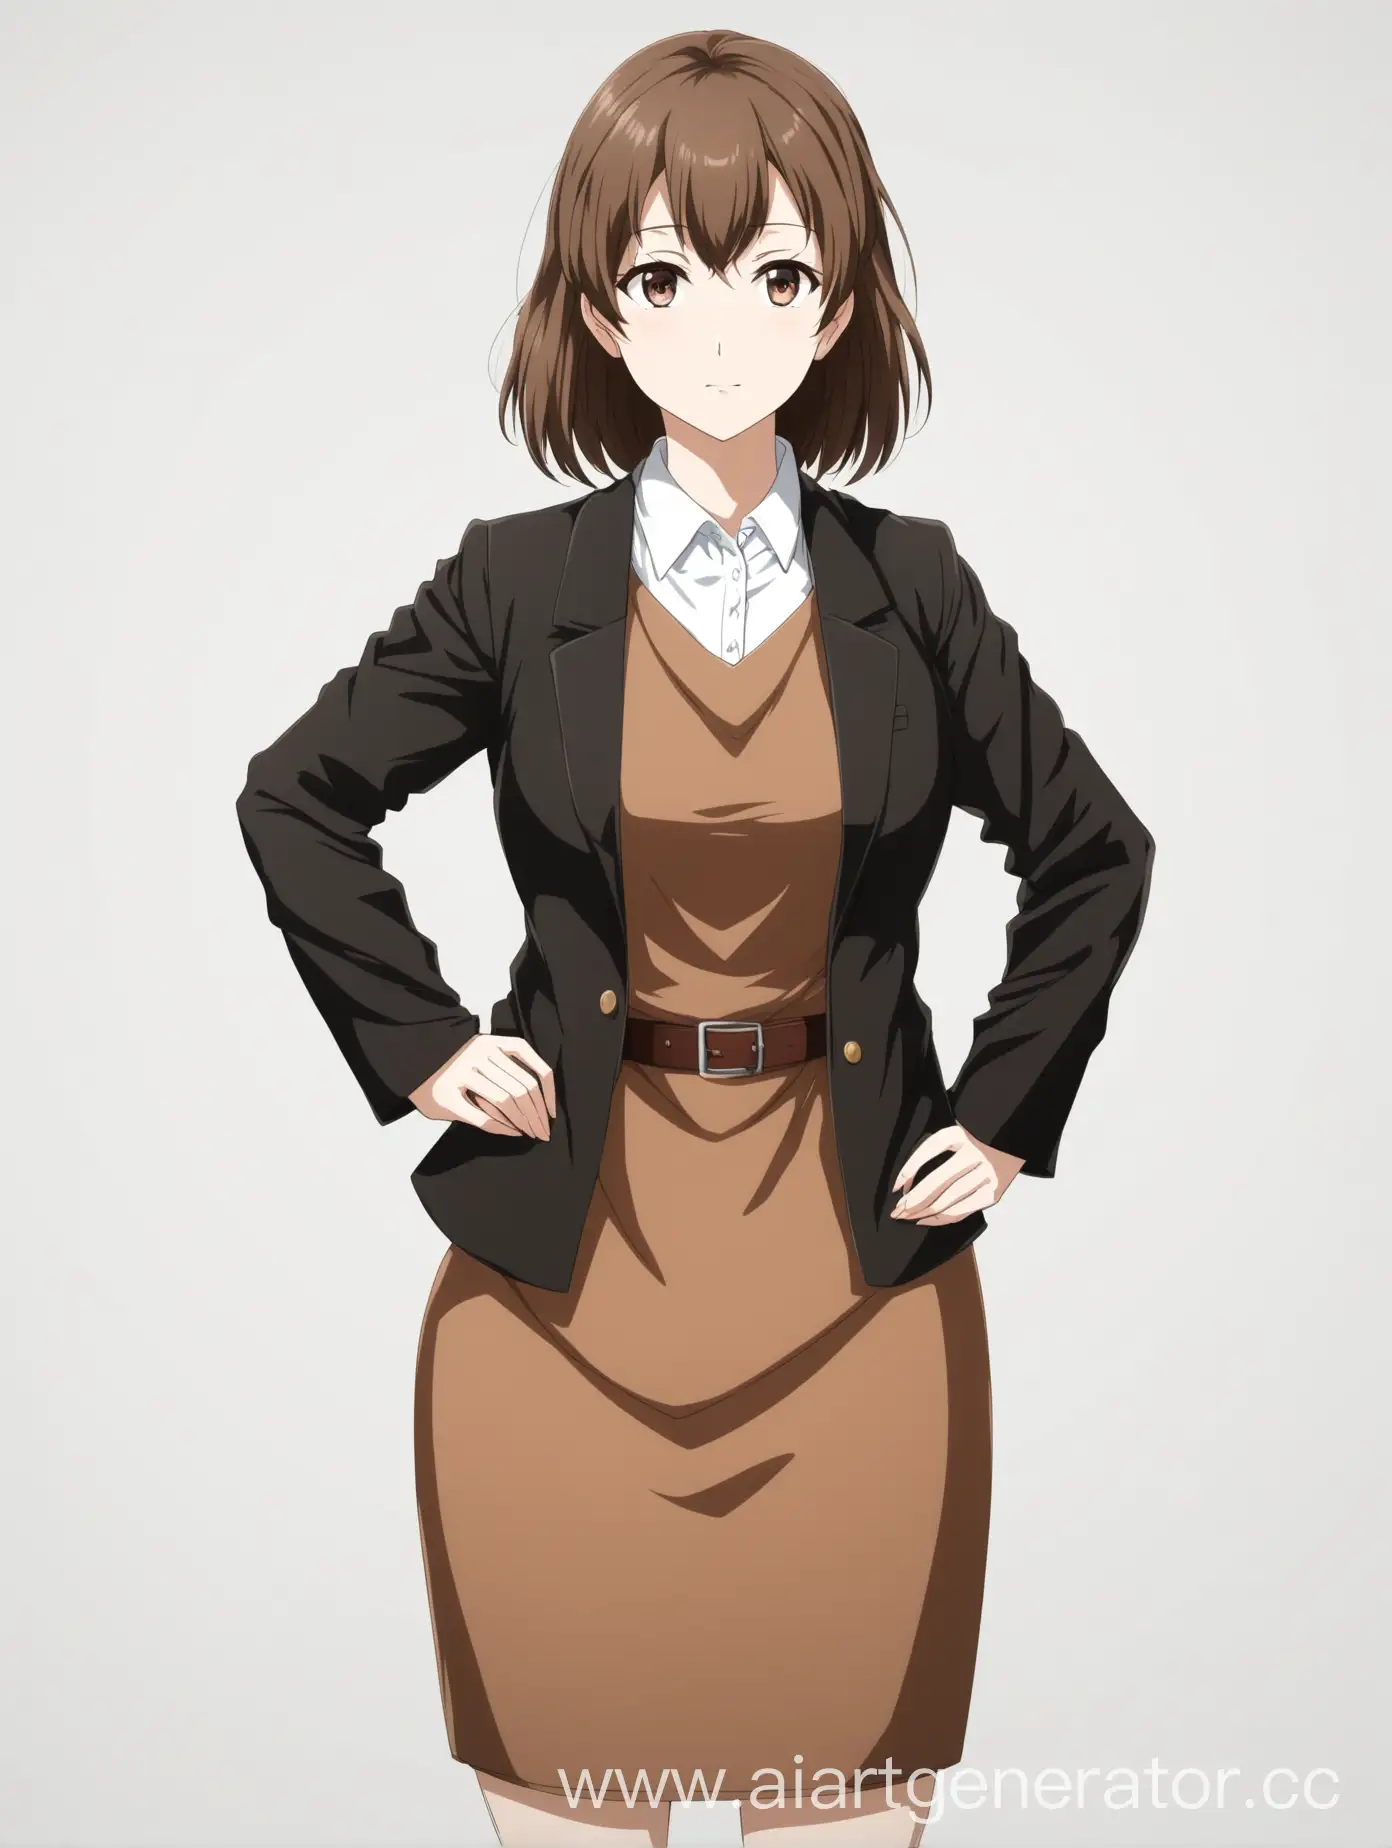 Аниме женщина-преподаватель в вузе, одета в коричневый сарафан и черный пиджак. Изолированный объект на белом фоне, фото по пояс